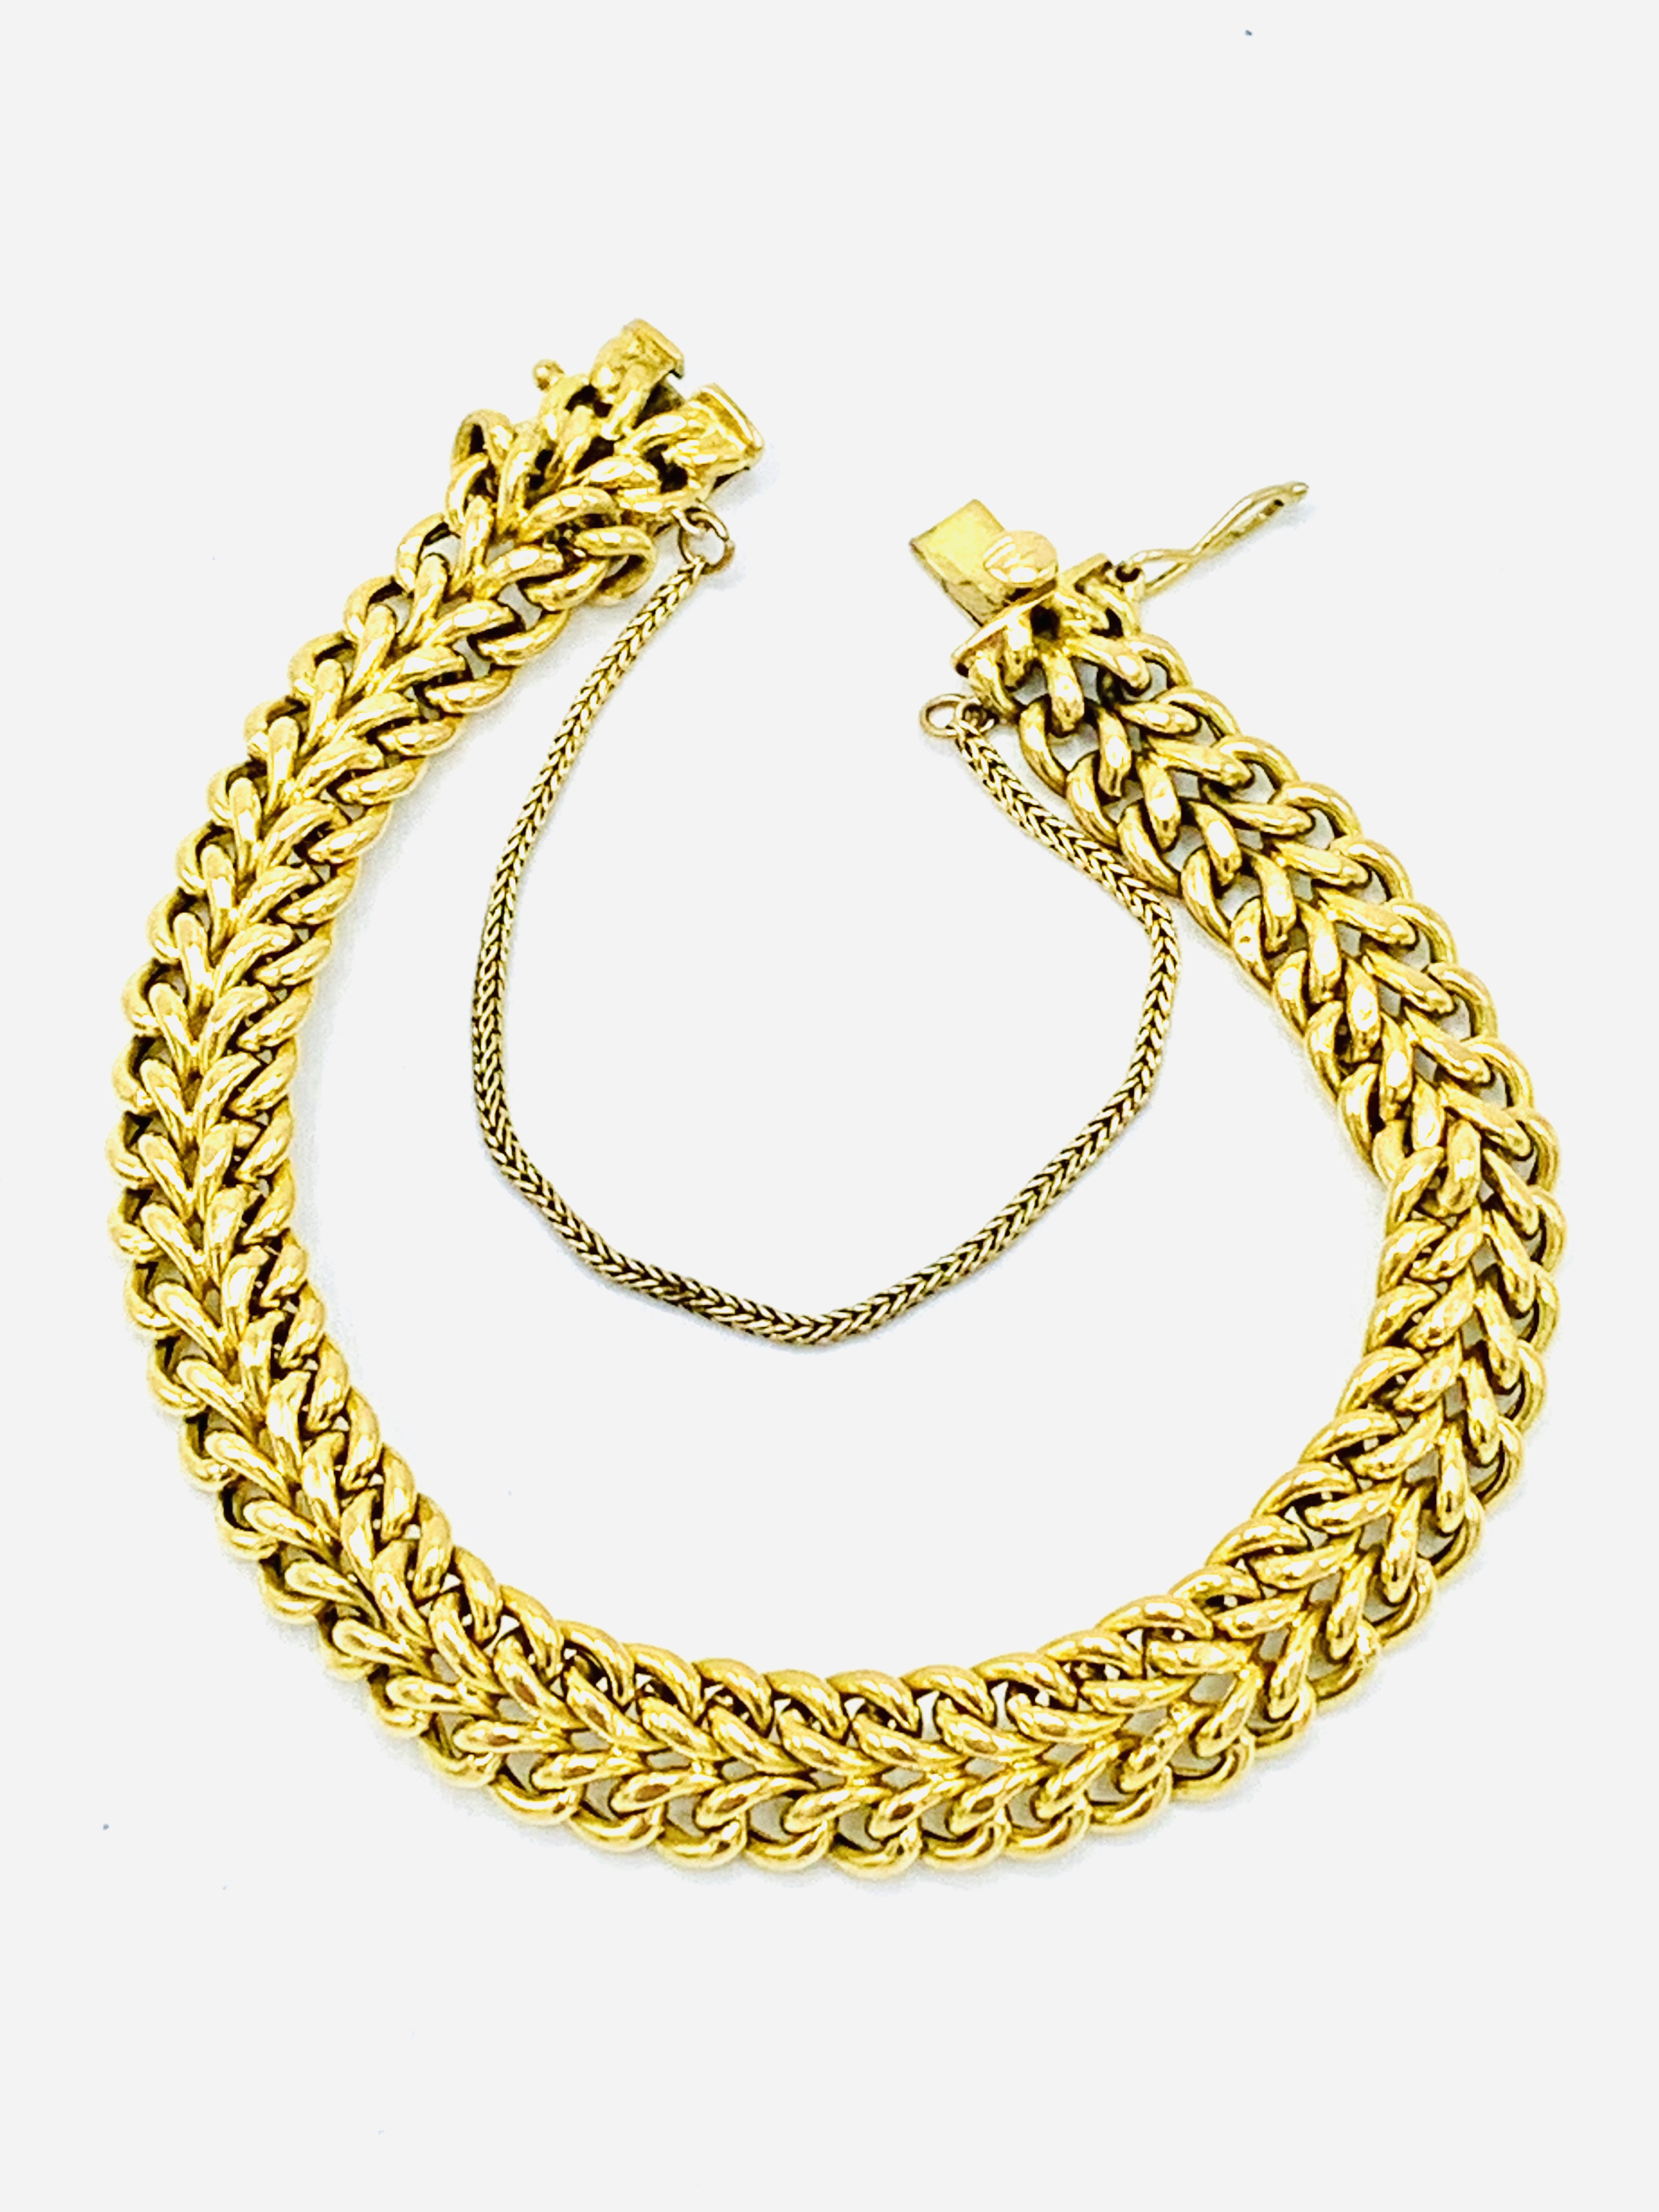 375 gold double chain bracelet